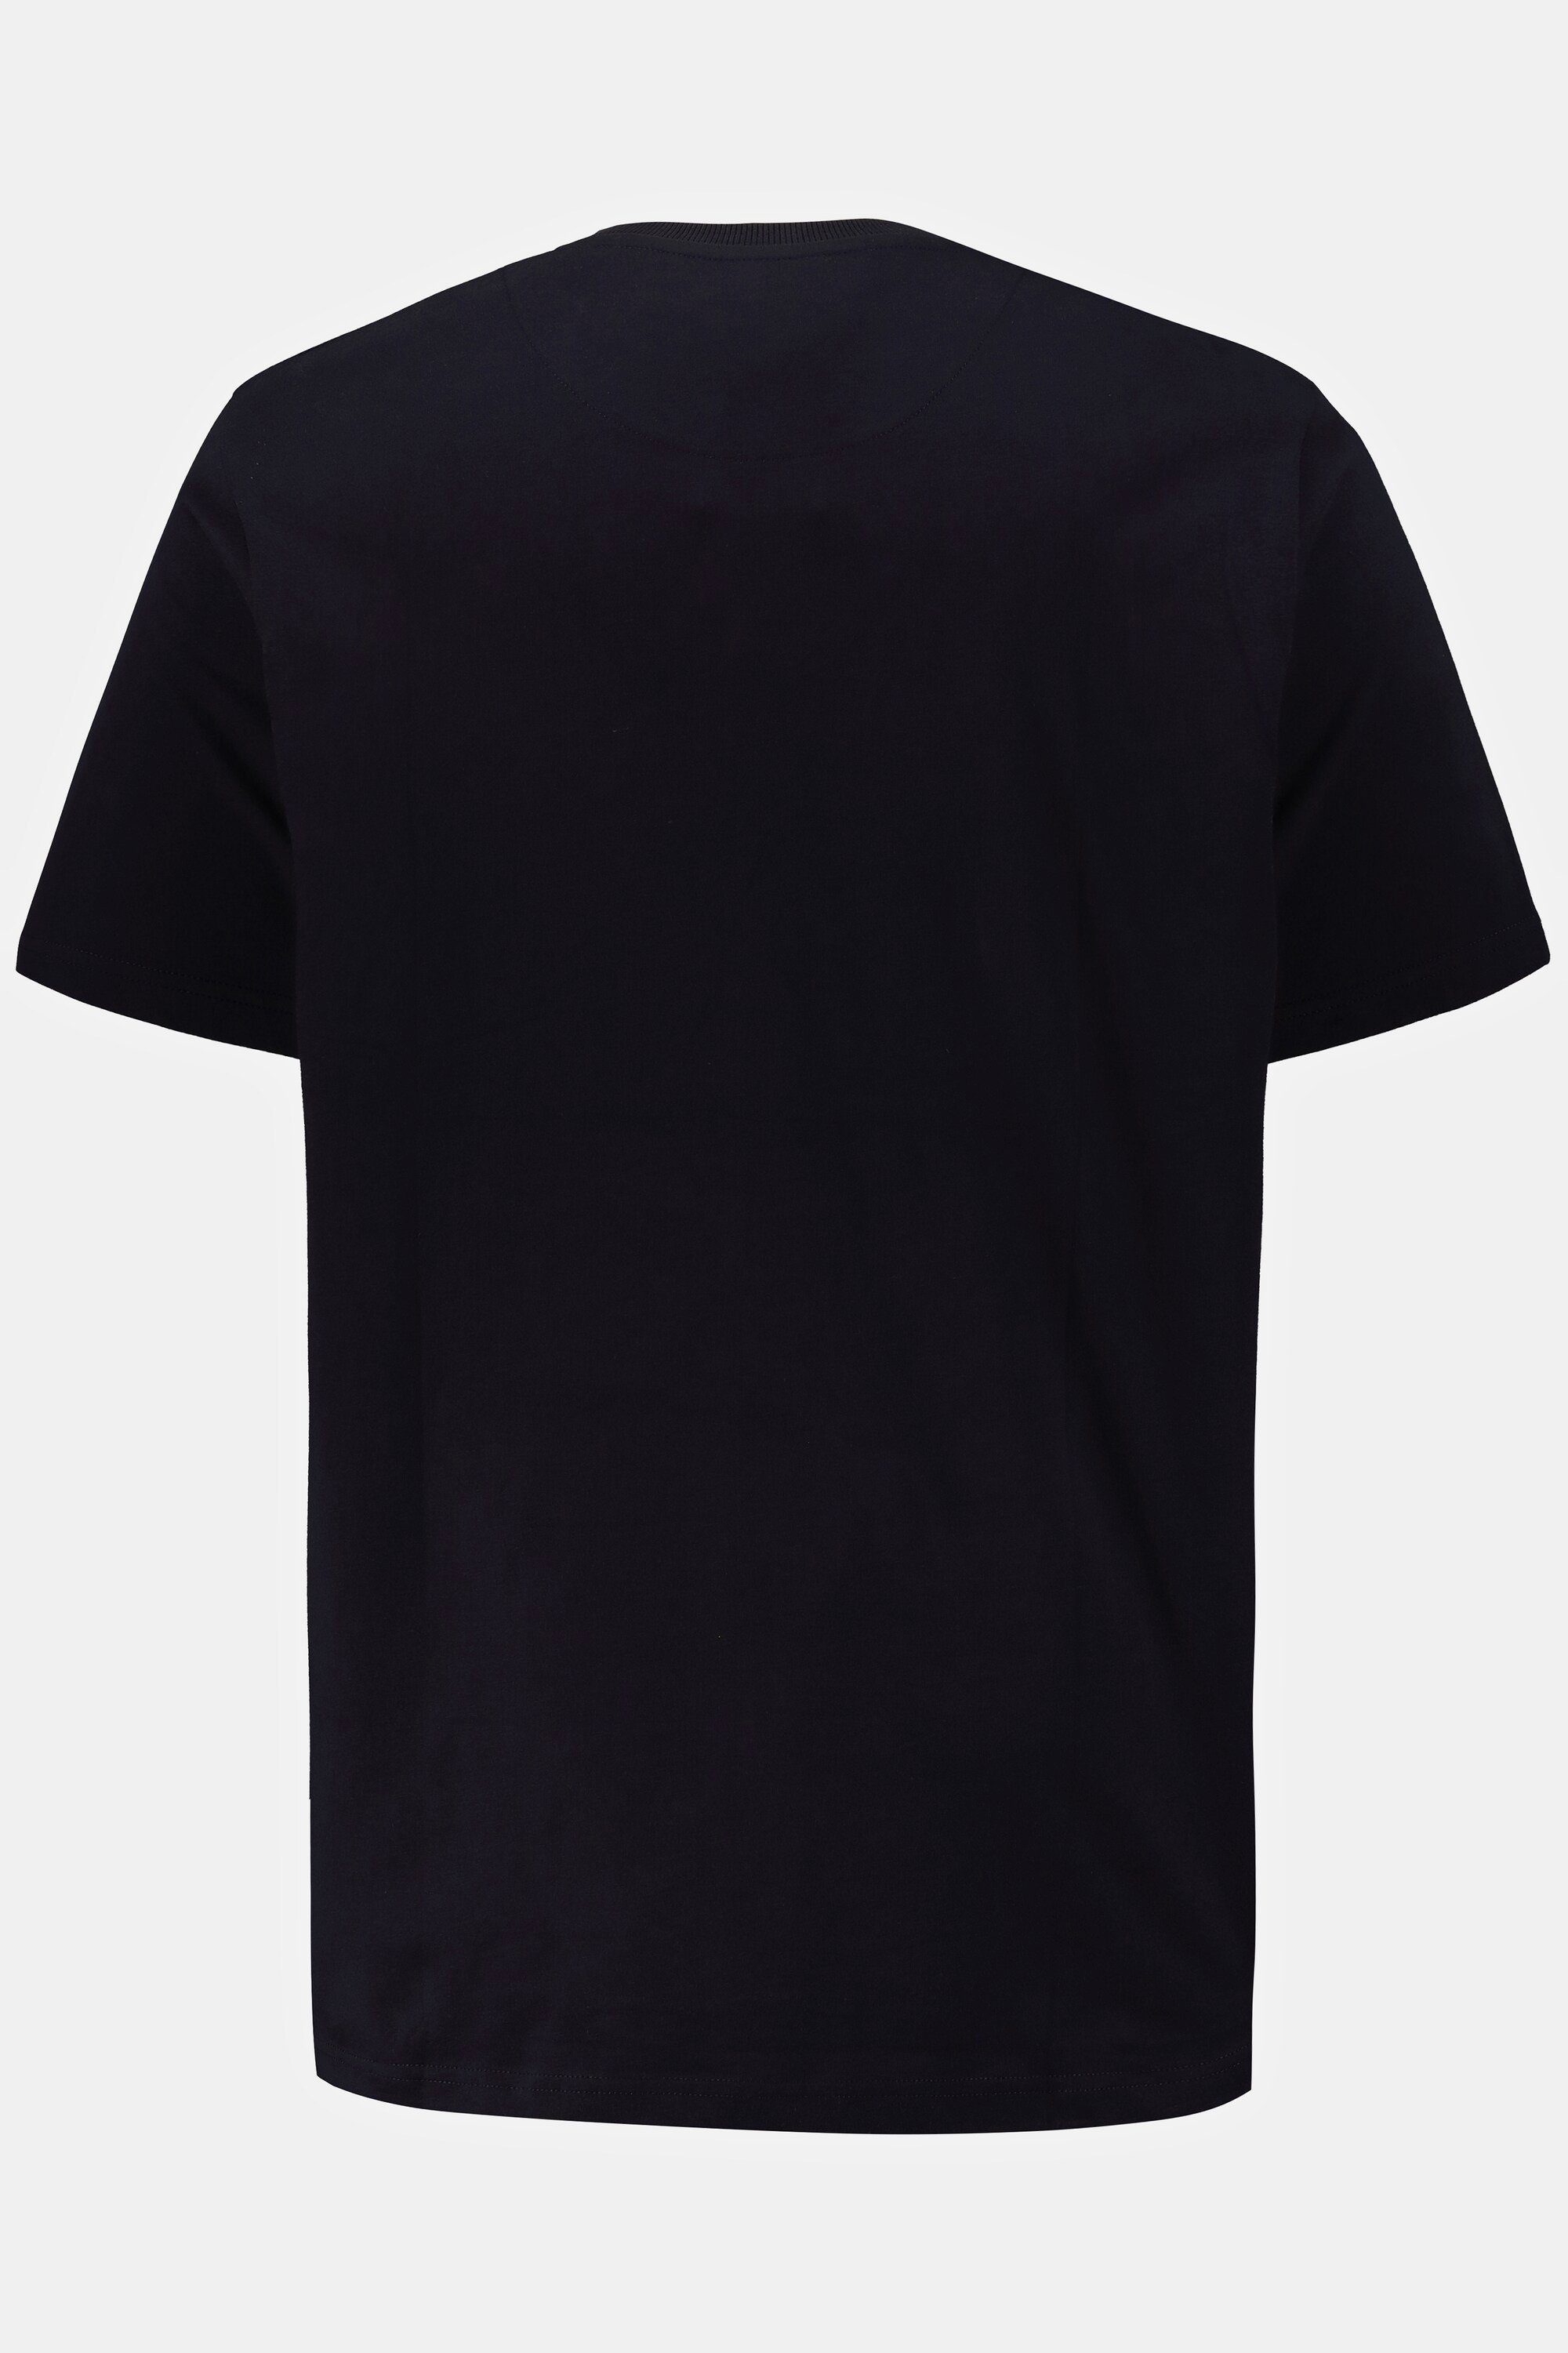 T-Shirt Bandshirt dunkel T-Shirt Halbarm Aerosmith marine JP1880